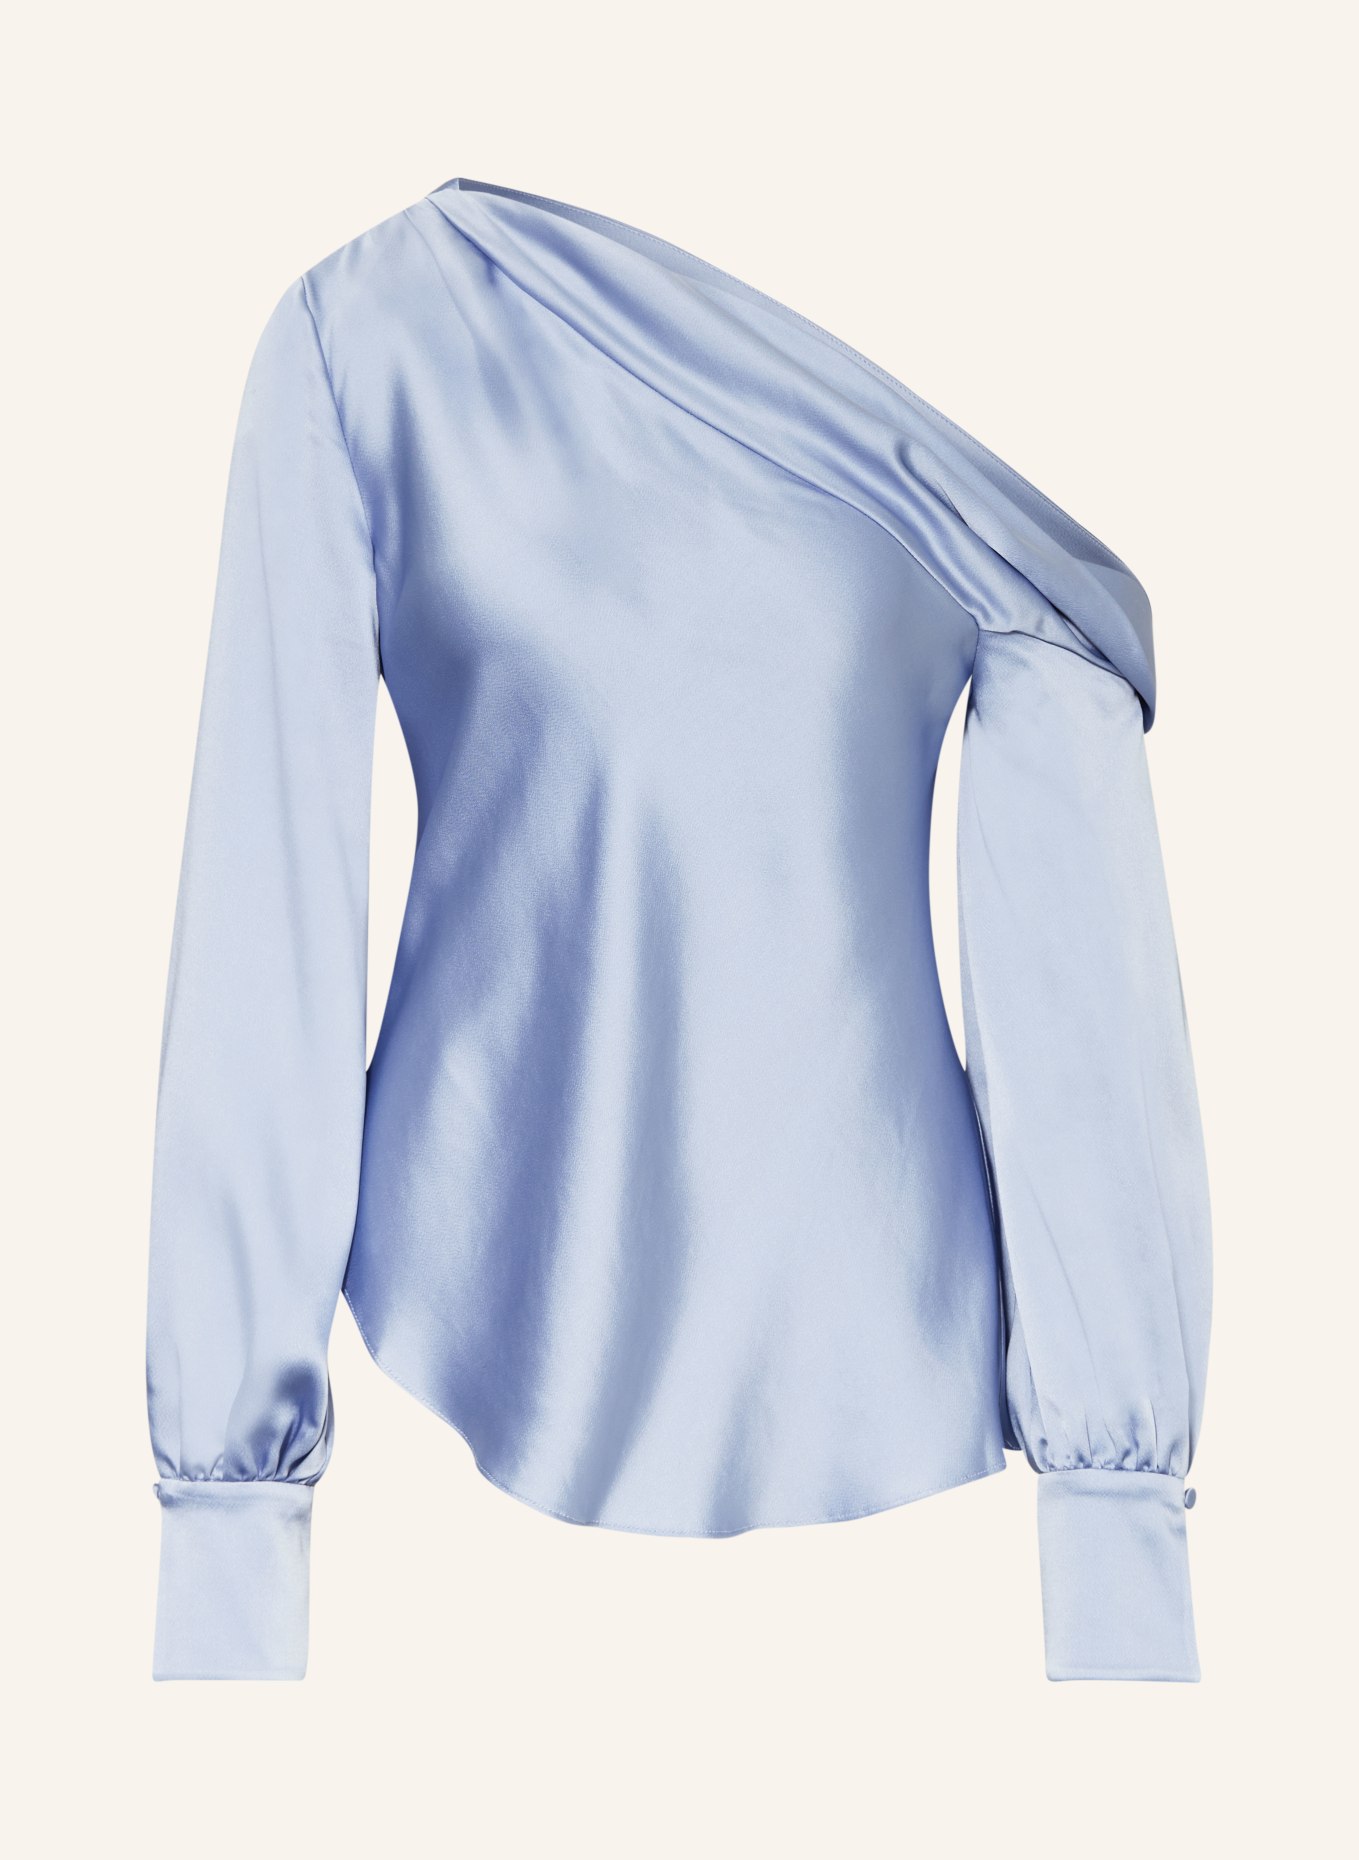 SIMKHAI One-shoulder top ALICE made of satin, Color: LIGHT BLUE (Image 1)